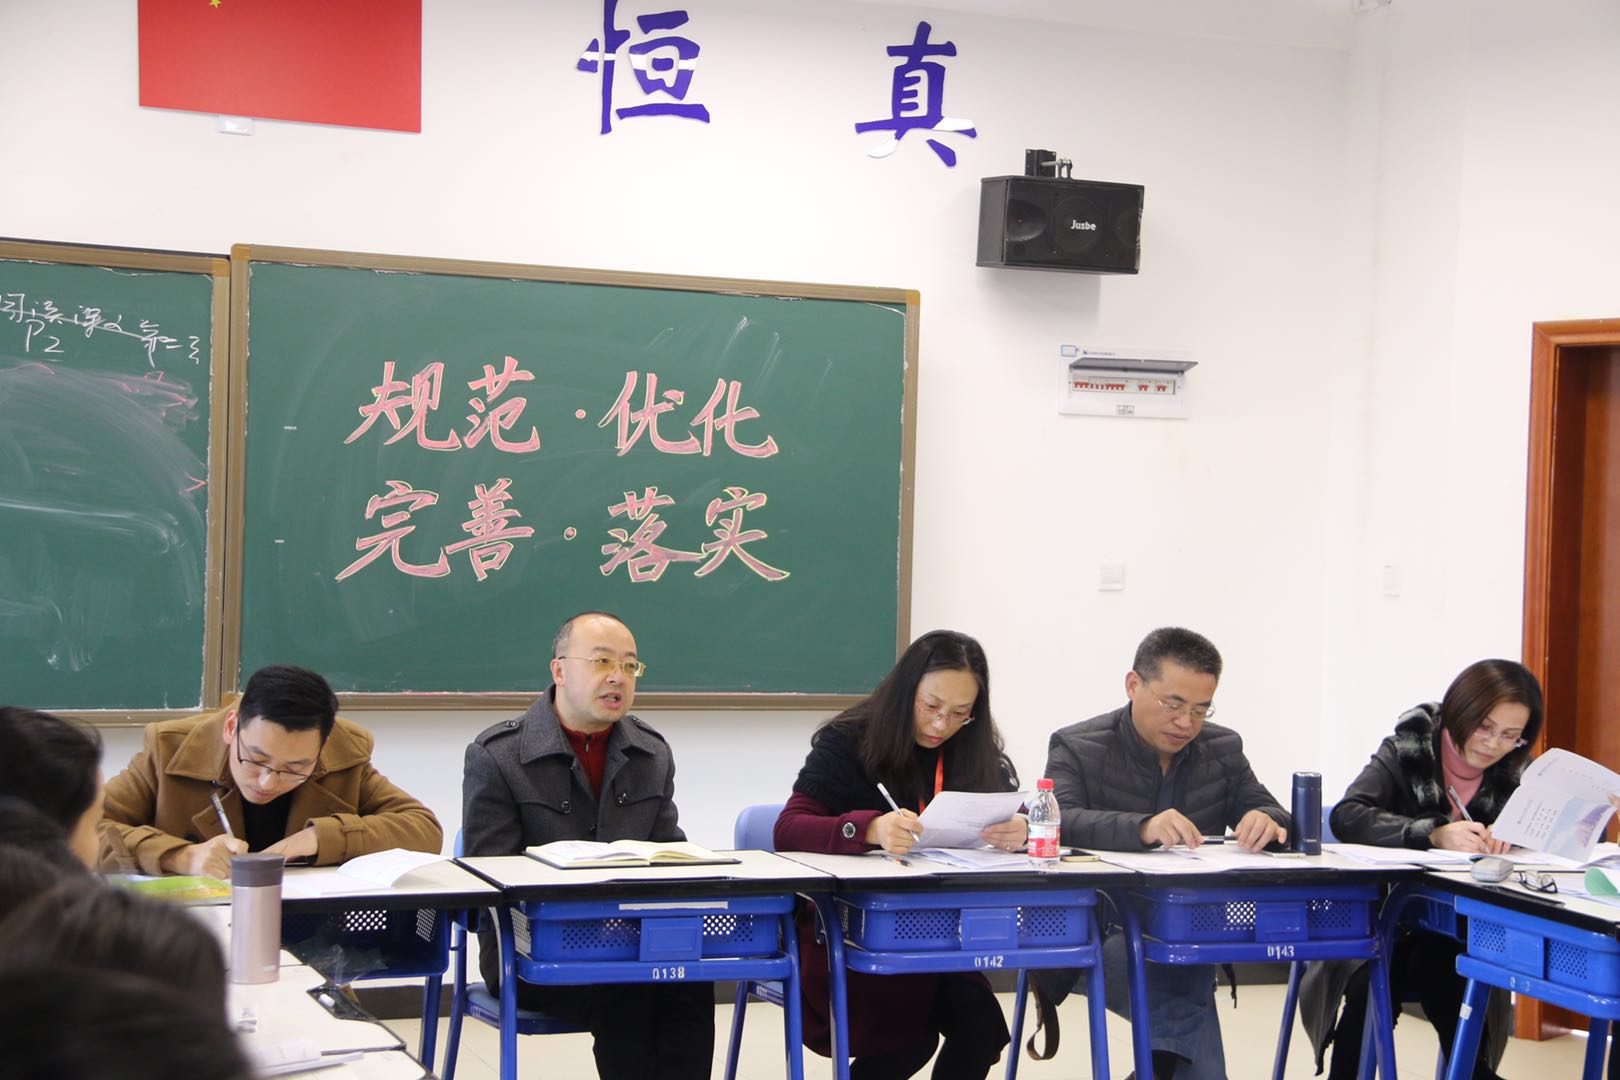 湖南师范大学专家及自分教学张勇博士参与评课